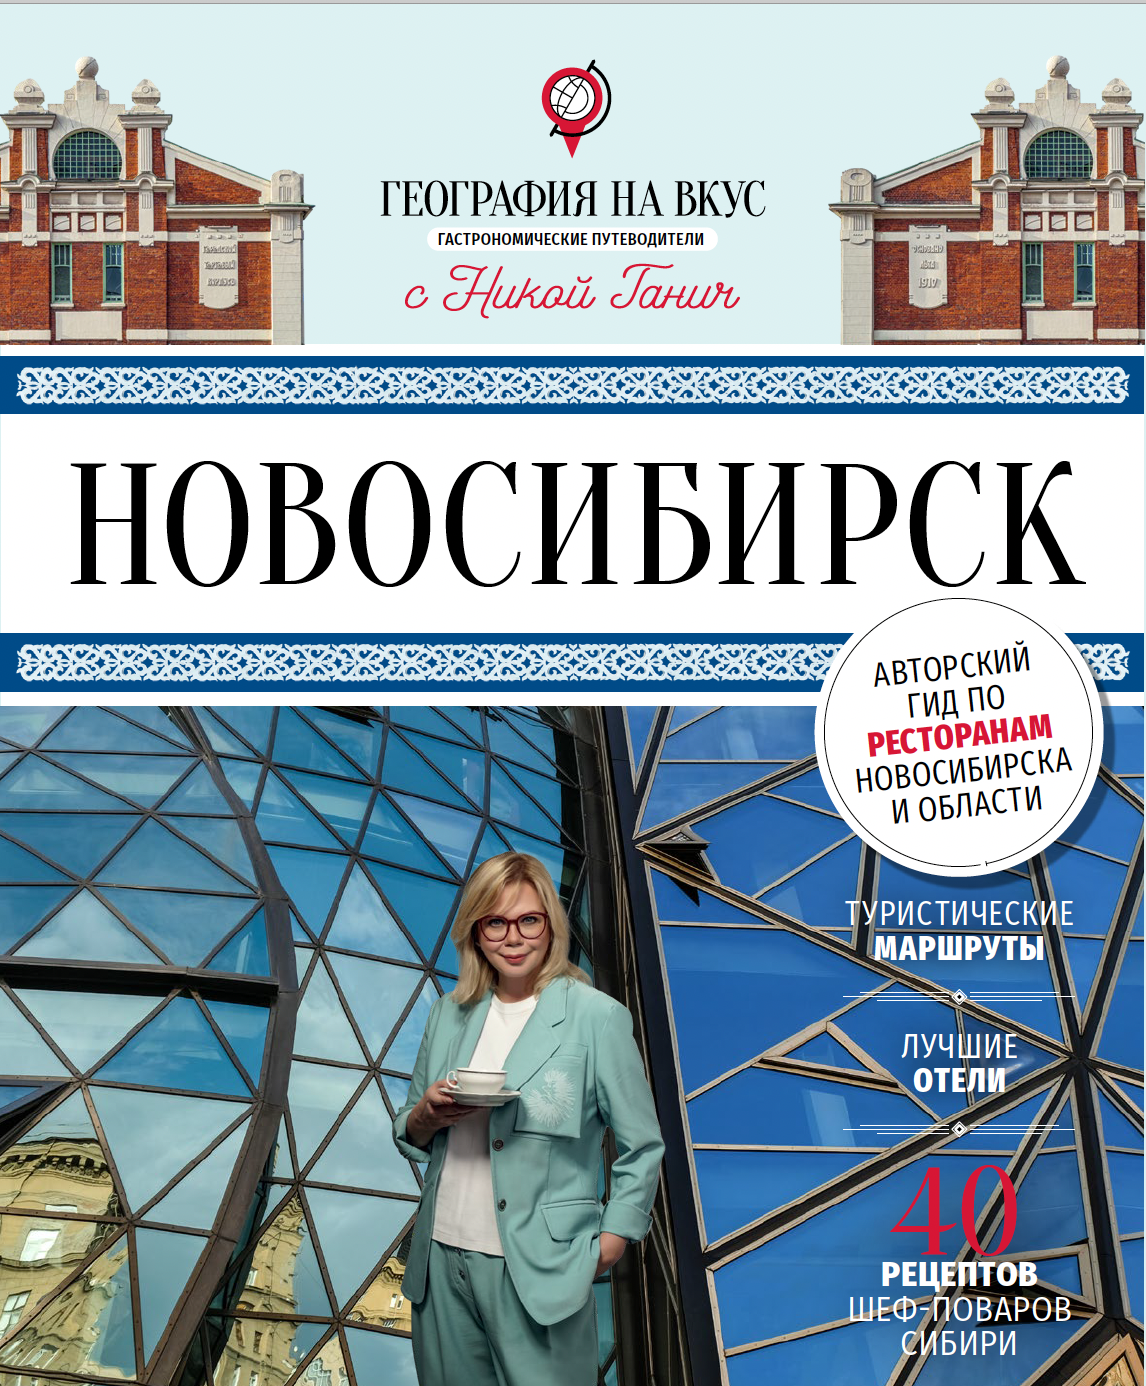 Как провести незабываемые новогодние каникулы в Новосибирске